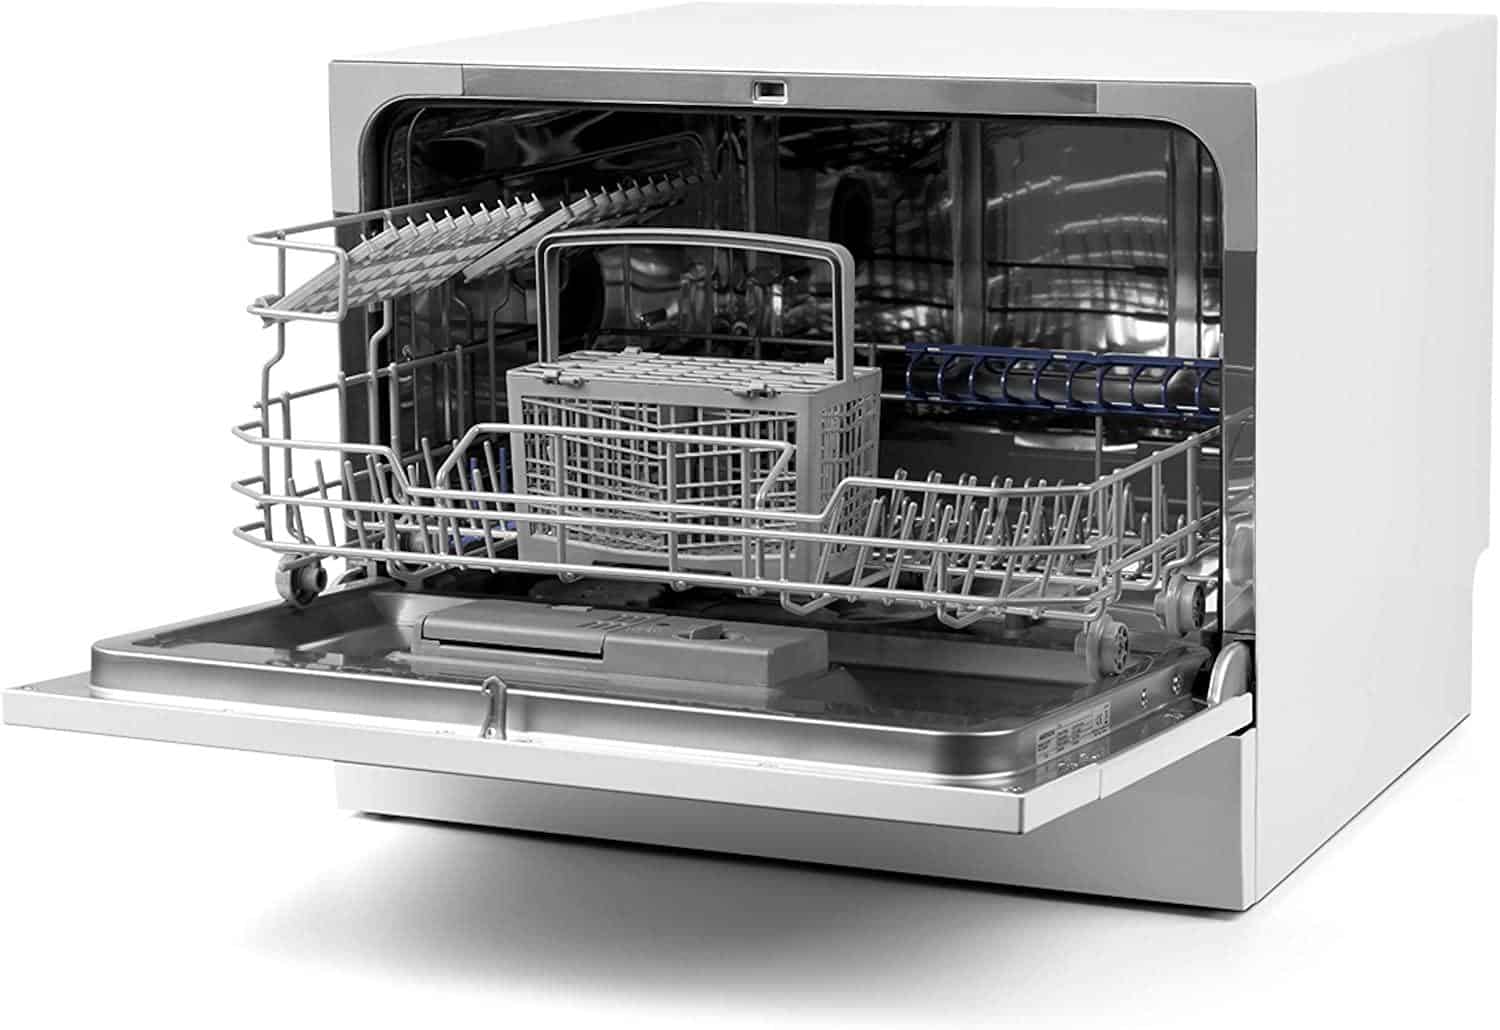 Рбт посудомоечная машина. Компактная посудомоечная машина Medion MD 37227 из Германии. Посудомоечная машина Cube c537+dgt50. Встраиваемая посудомоечная машина Neff s853hkx50r. Посудомоечная машина MS/easy 50.